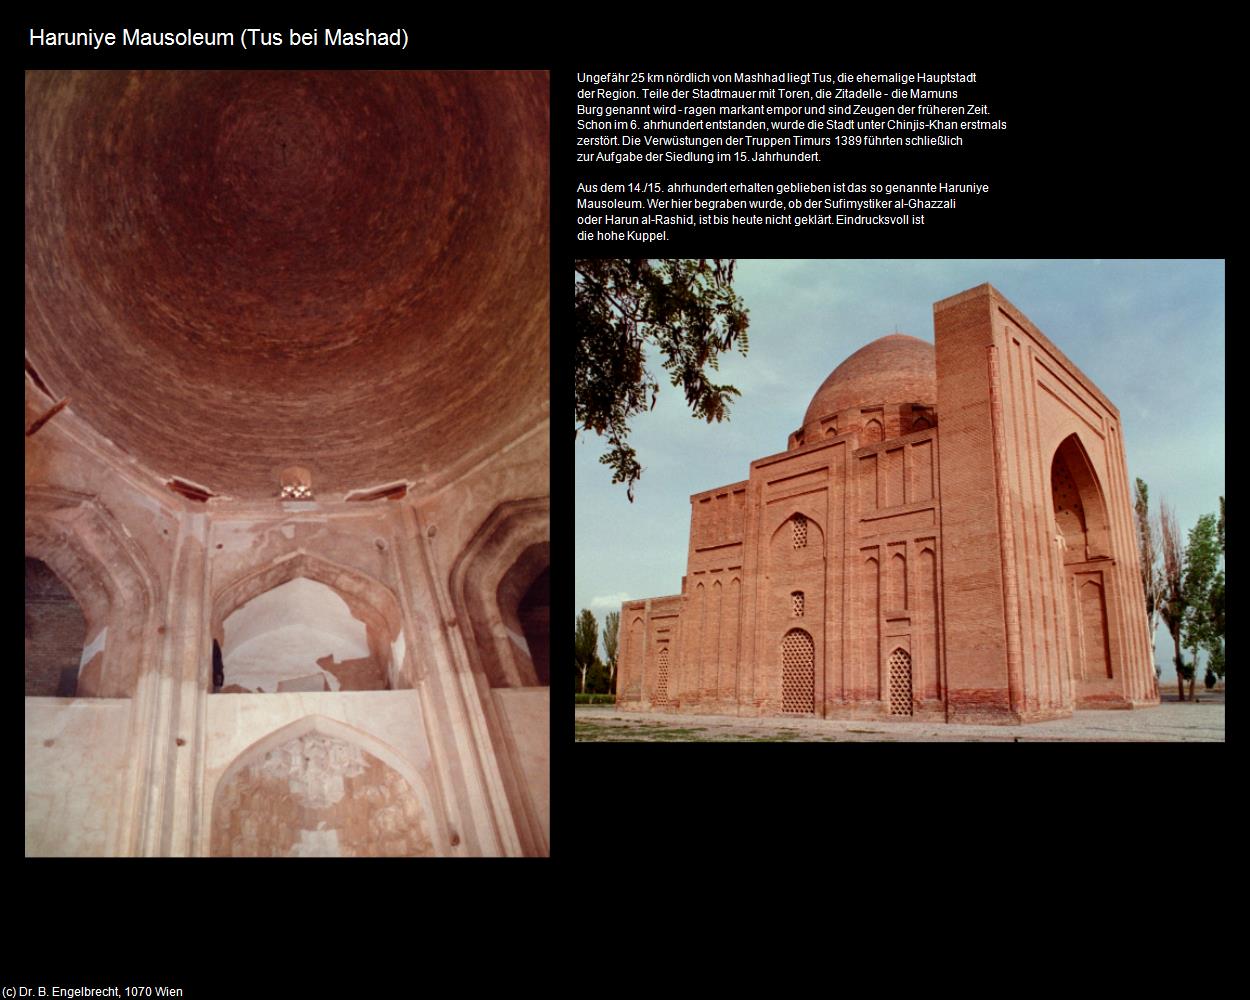 Haruniye Mausoleum (Tus bei Mashad) in Iran